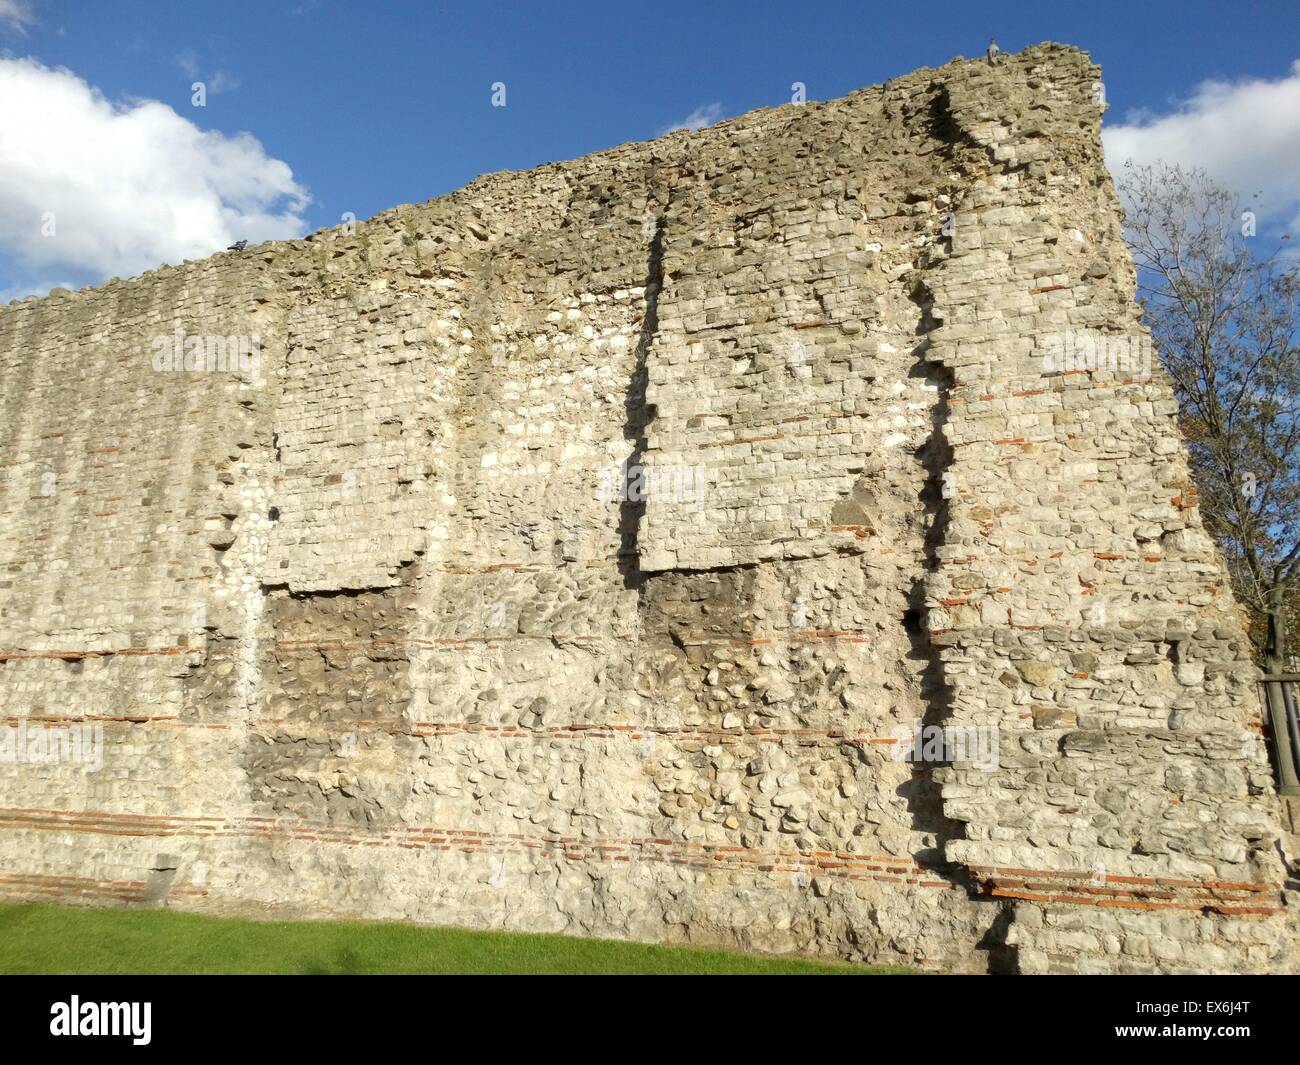 Fotografia a colori del London Wall, una muraglia difensiva costruita dai Romani intorno Londinium. In data 2° secolo D.C. Foto Stock